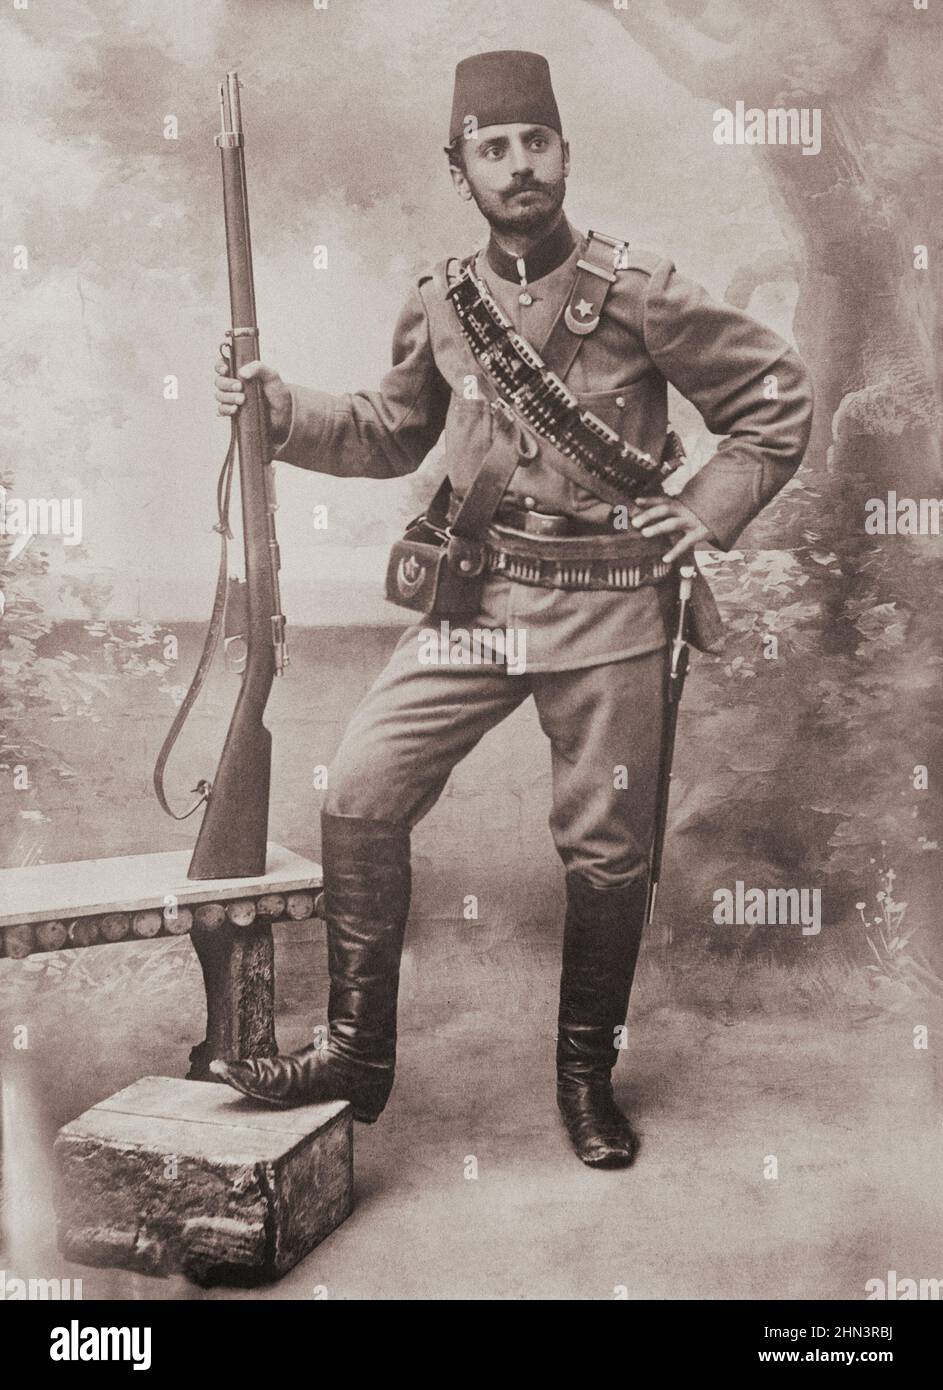 Vintage-Foto des türkischen Soldaten von der salonikanischen Front, mit Gewehr und Bajonett. Osmanisches Reich. 1915-1917 Stockfoto